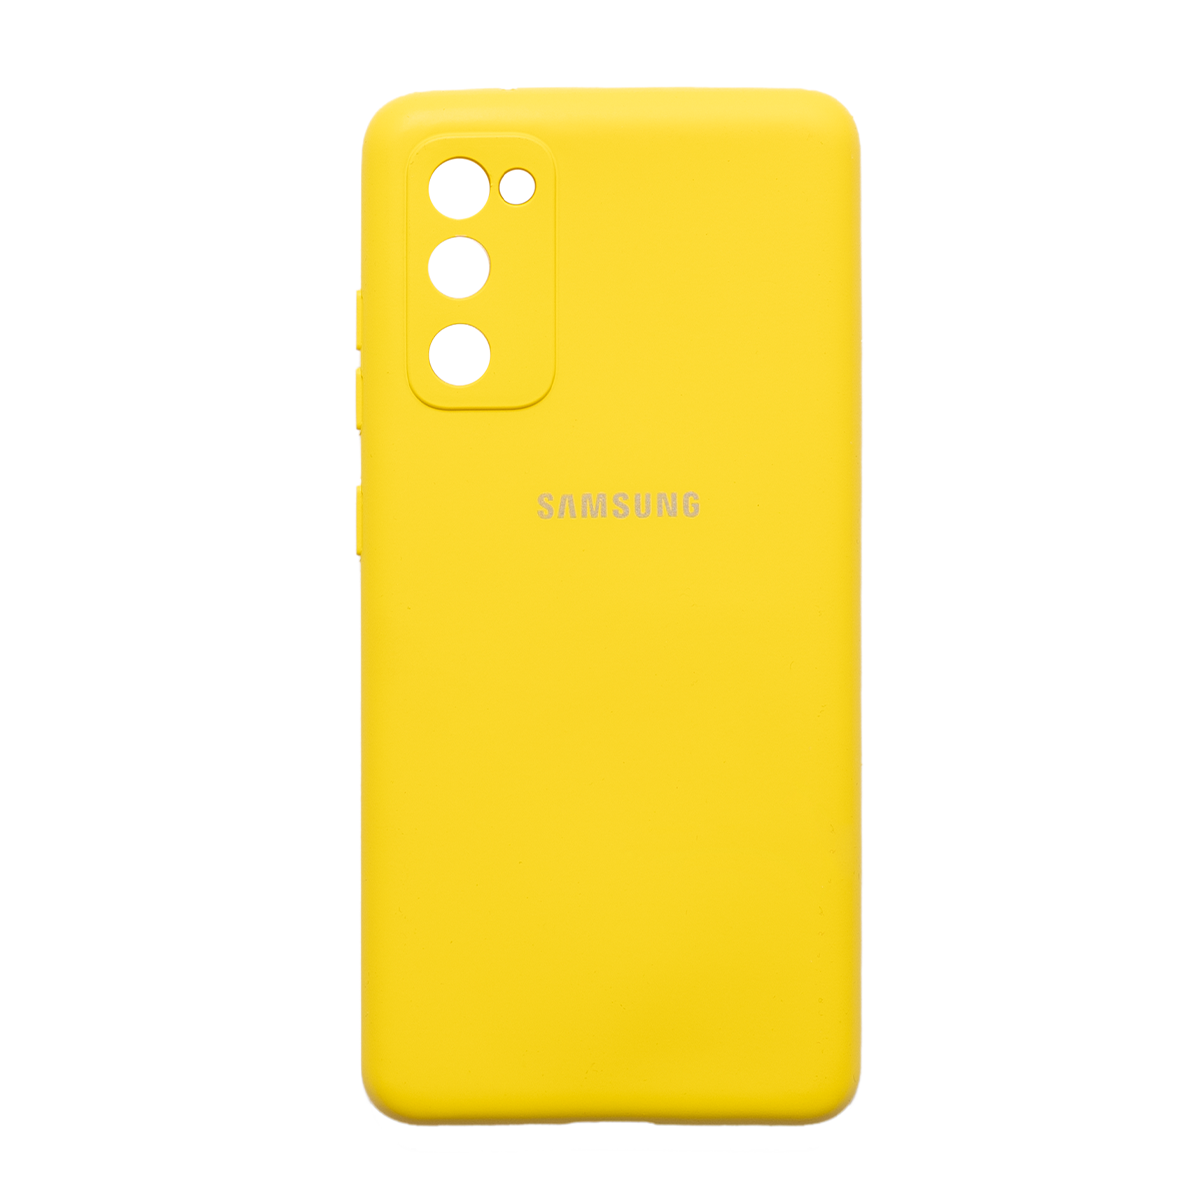  کاور سیلیکونی محافظ لنزدار مناسب برای گوشی موبایل سامسونگ Galaxy S20 FE-زرد